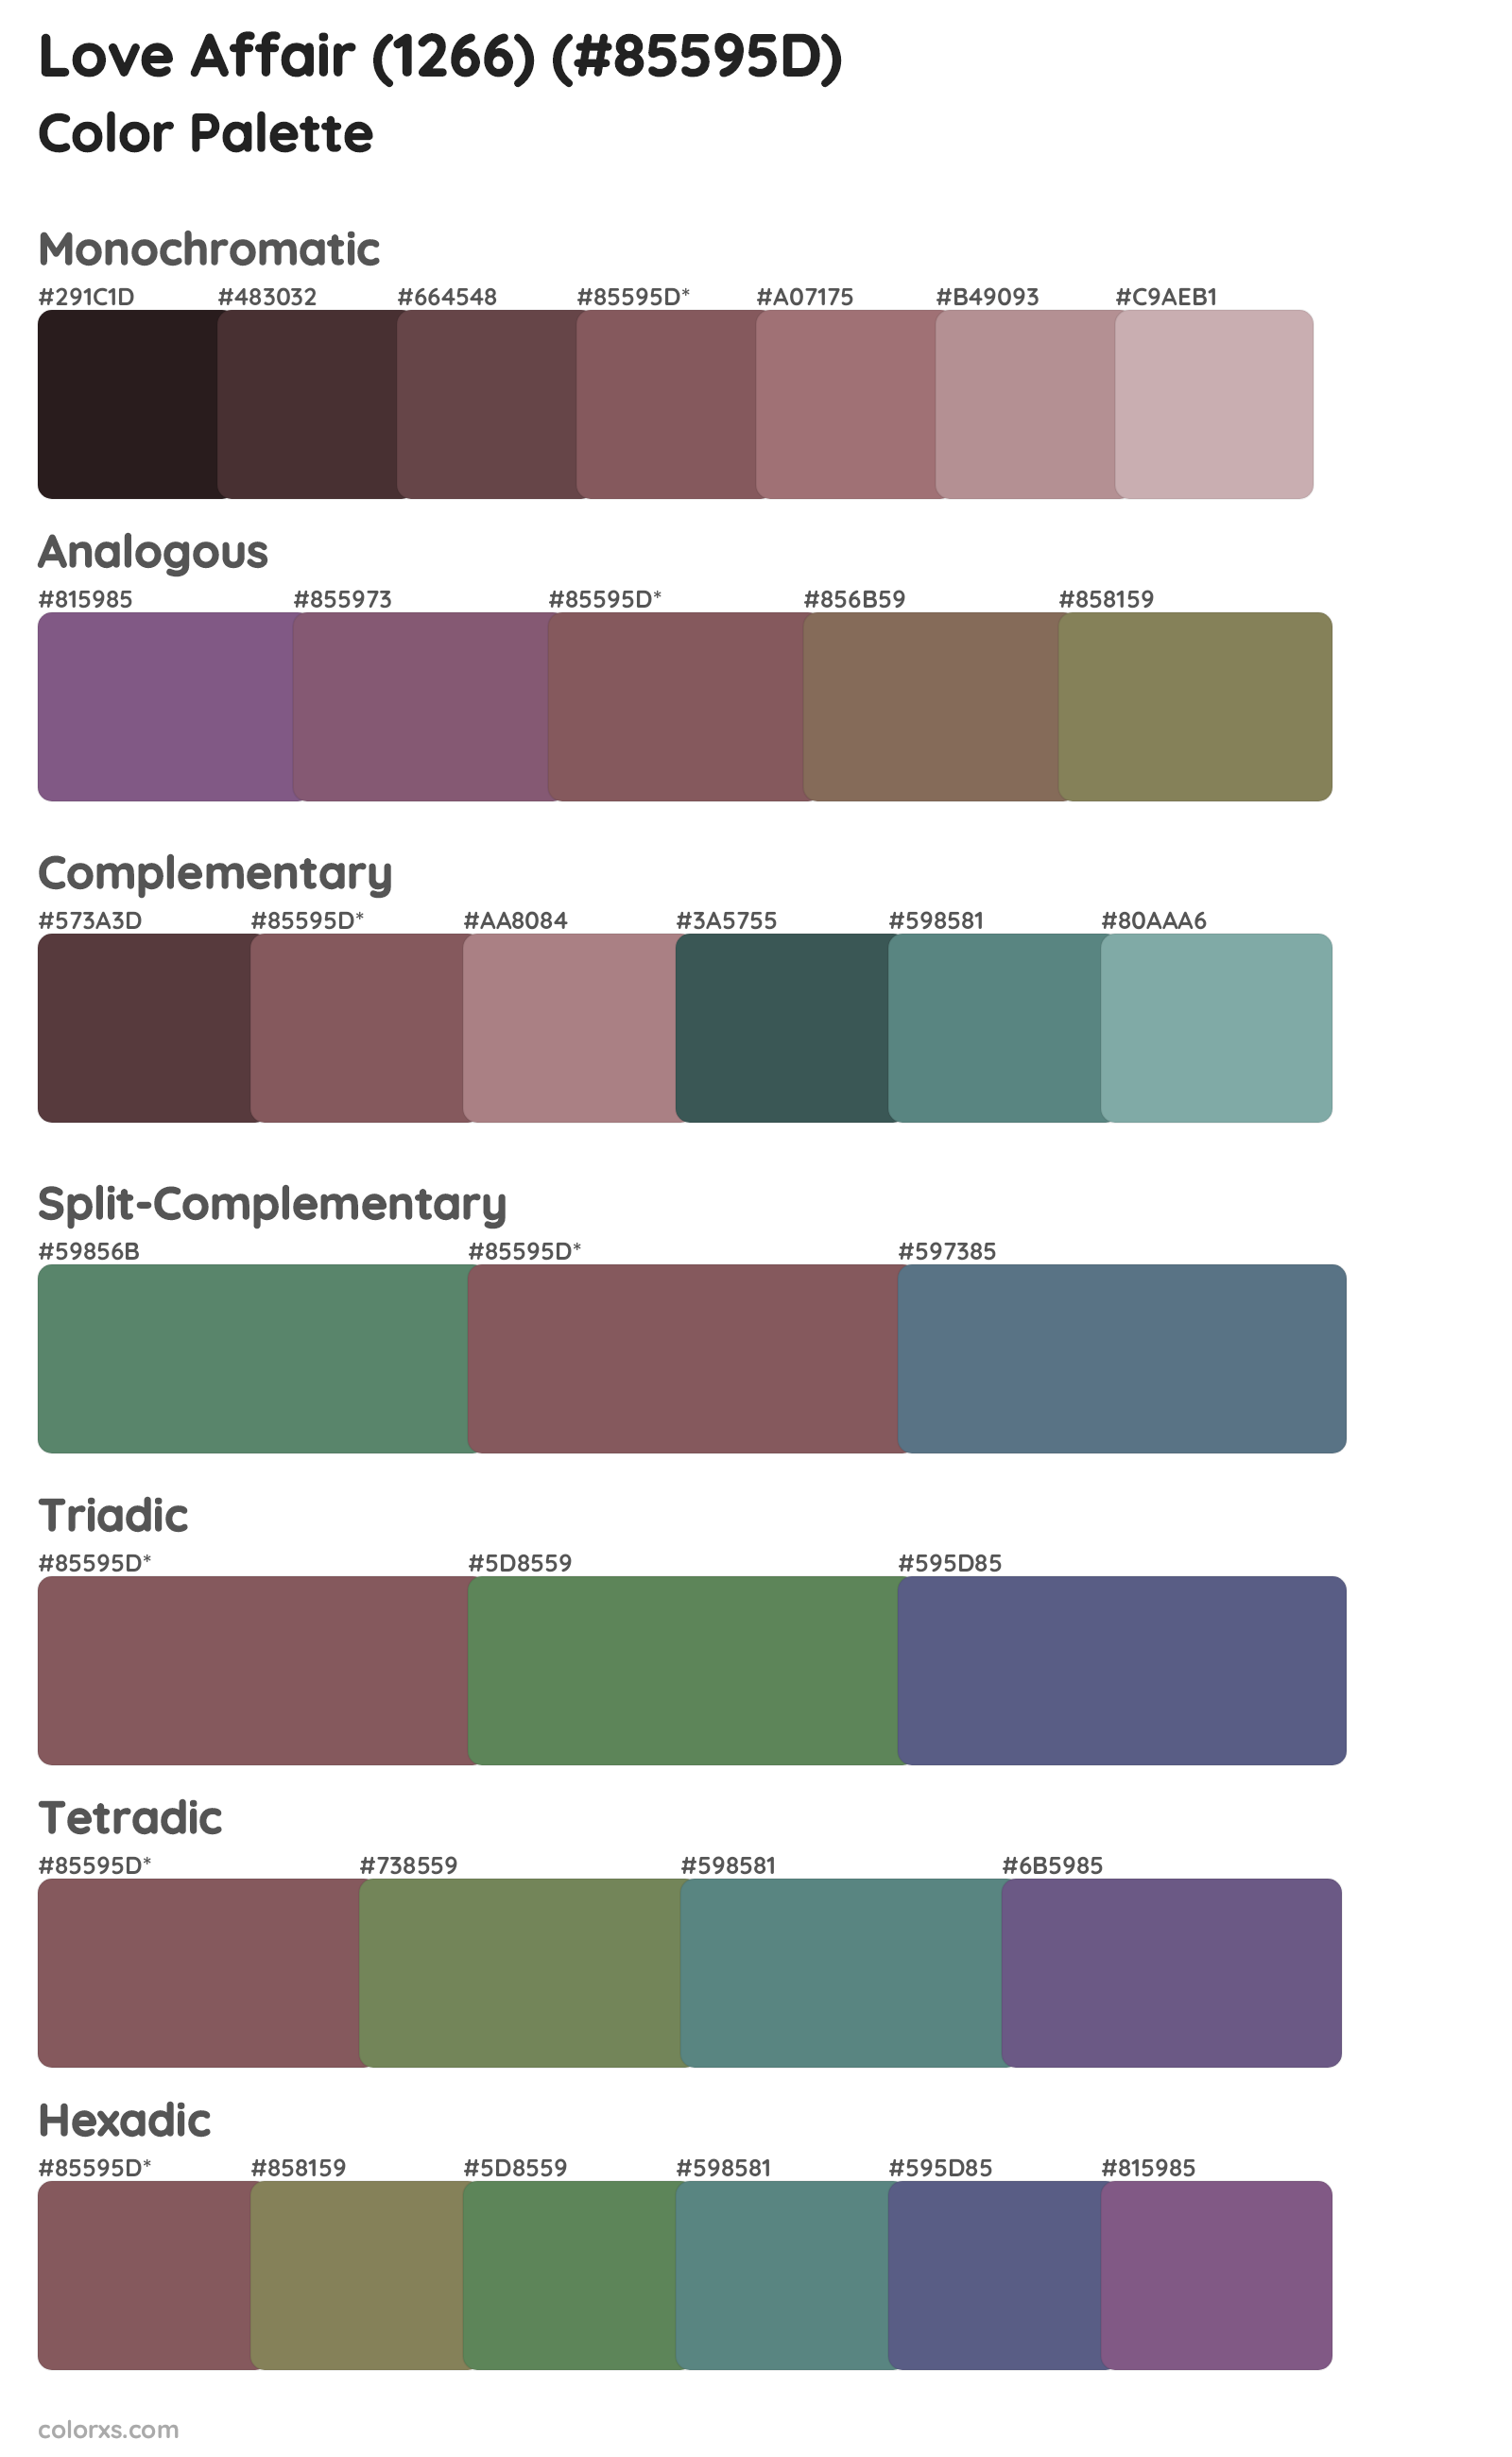 Love Affair (1266) Color Scheme Palettes